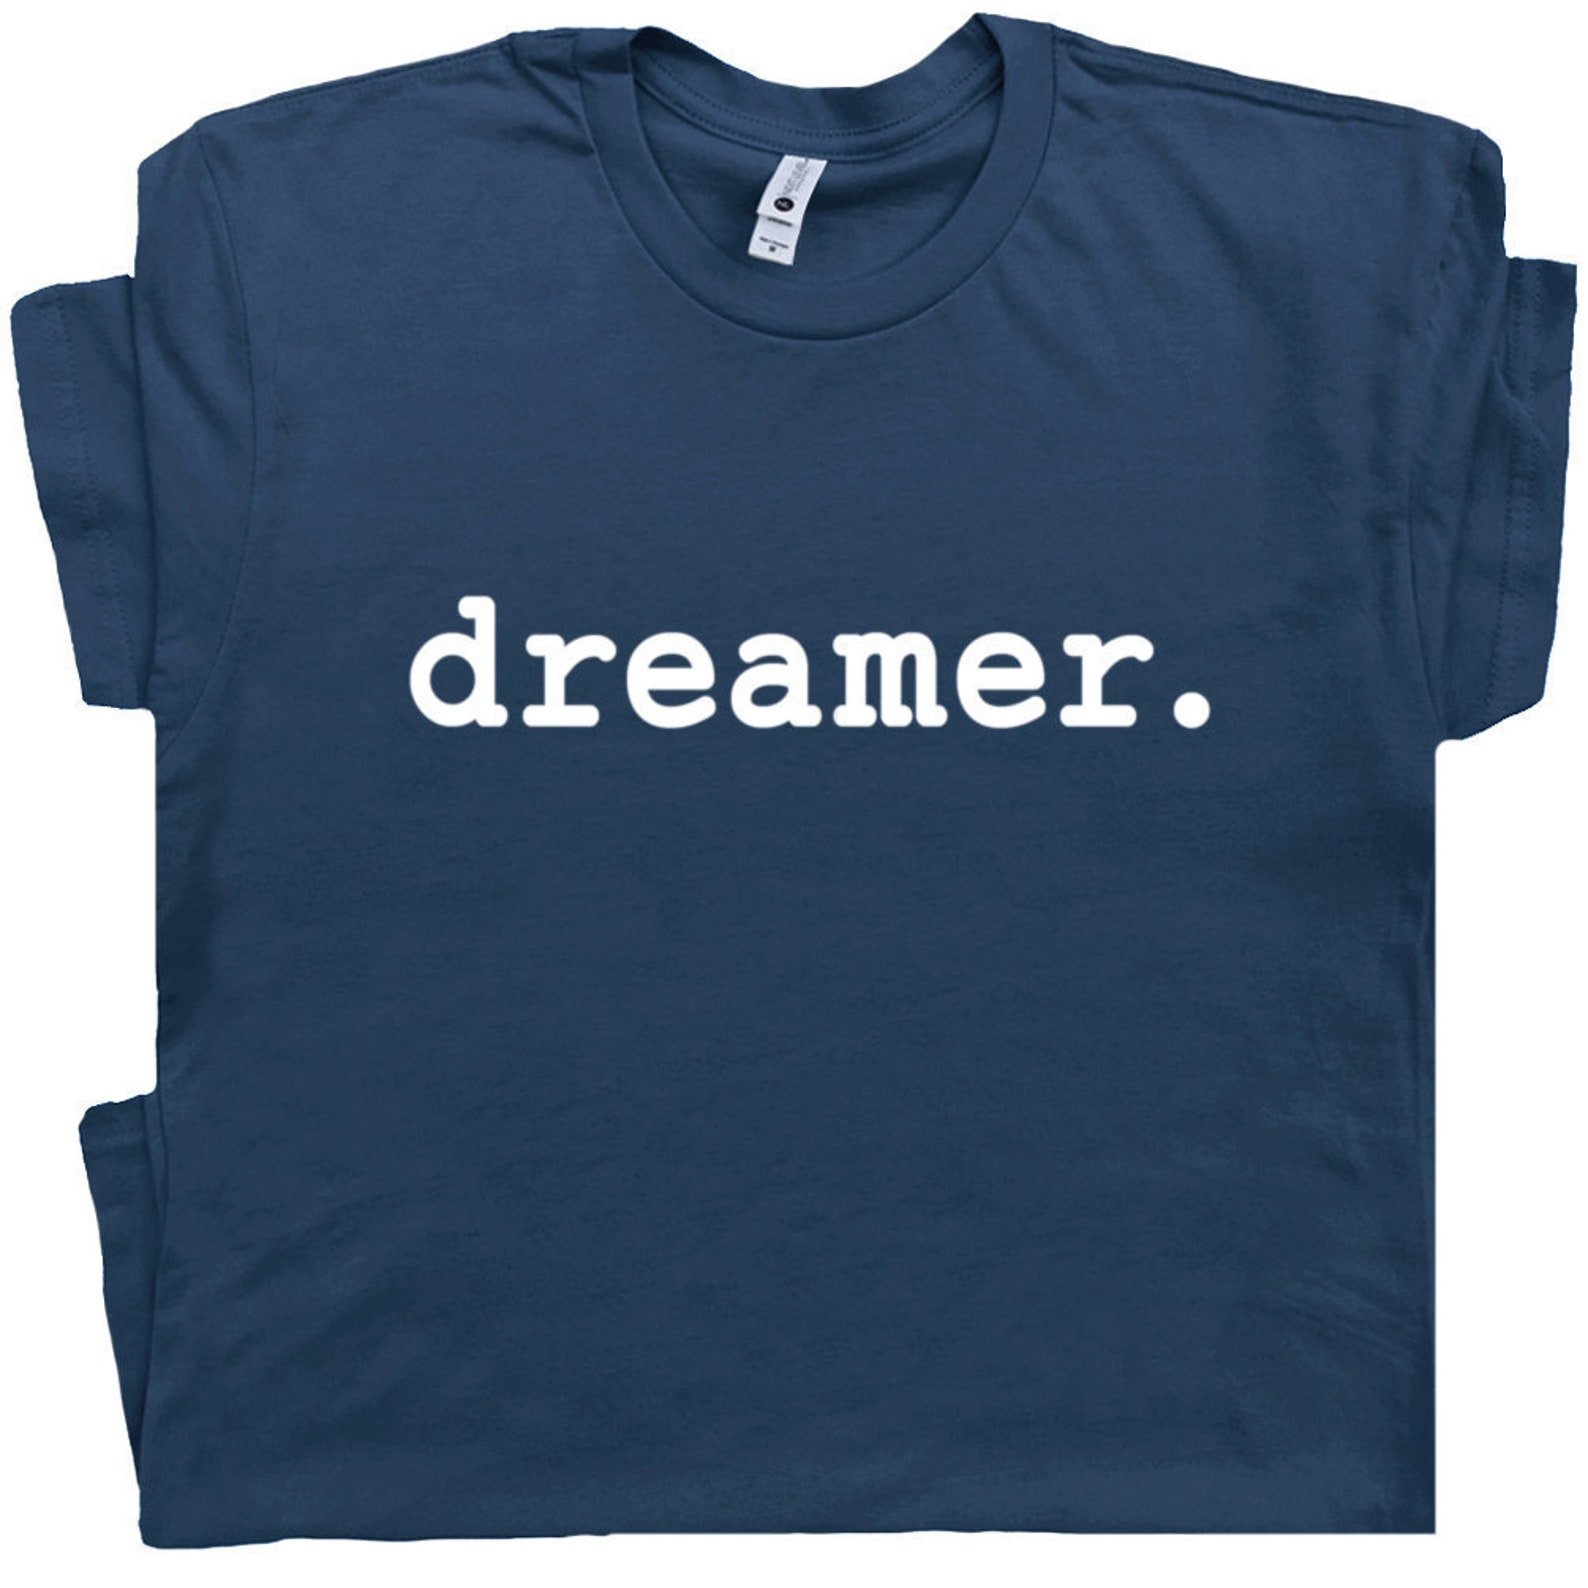 Футболка Dreamer c. Футболка с надписью i’m Dreamer. Jack Dreamer. My Dream футболка.